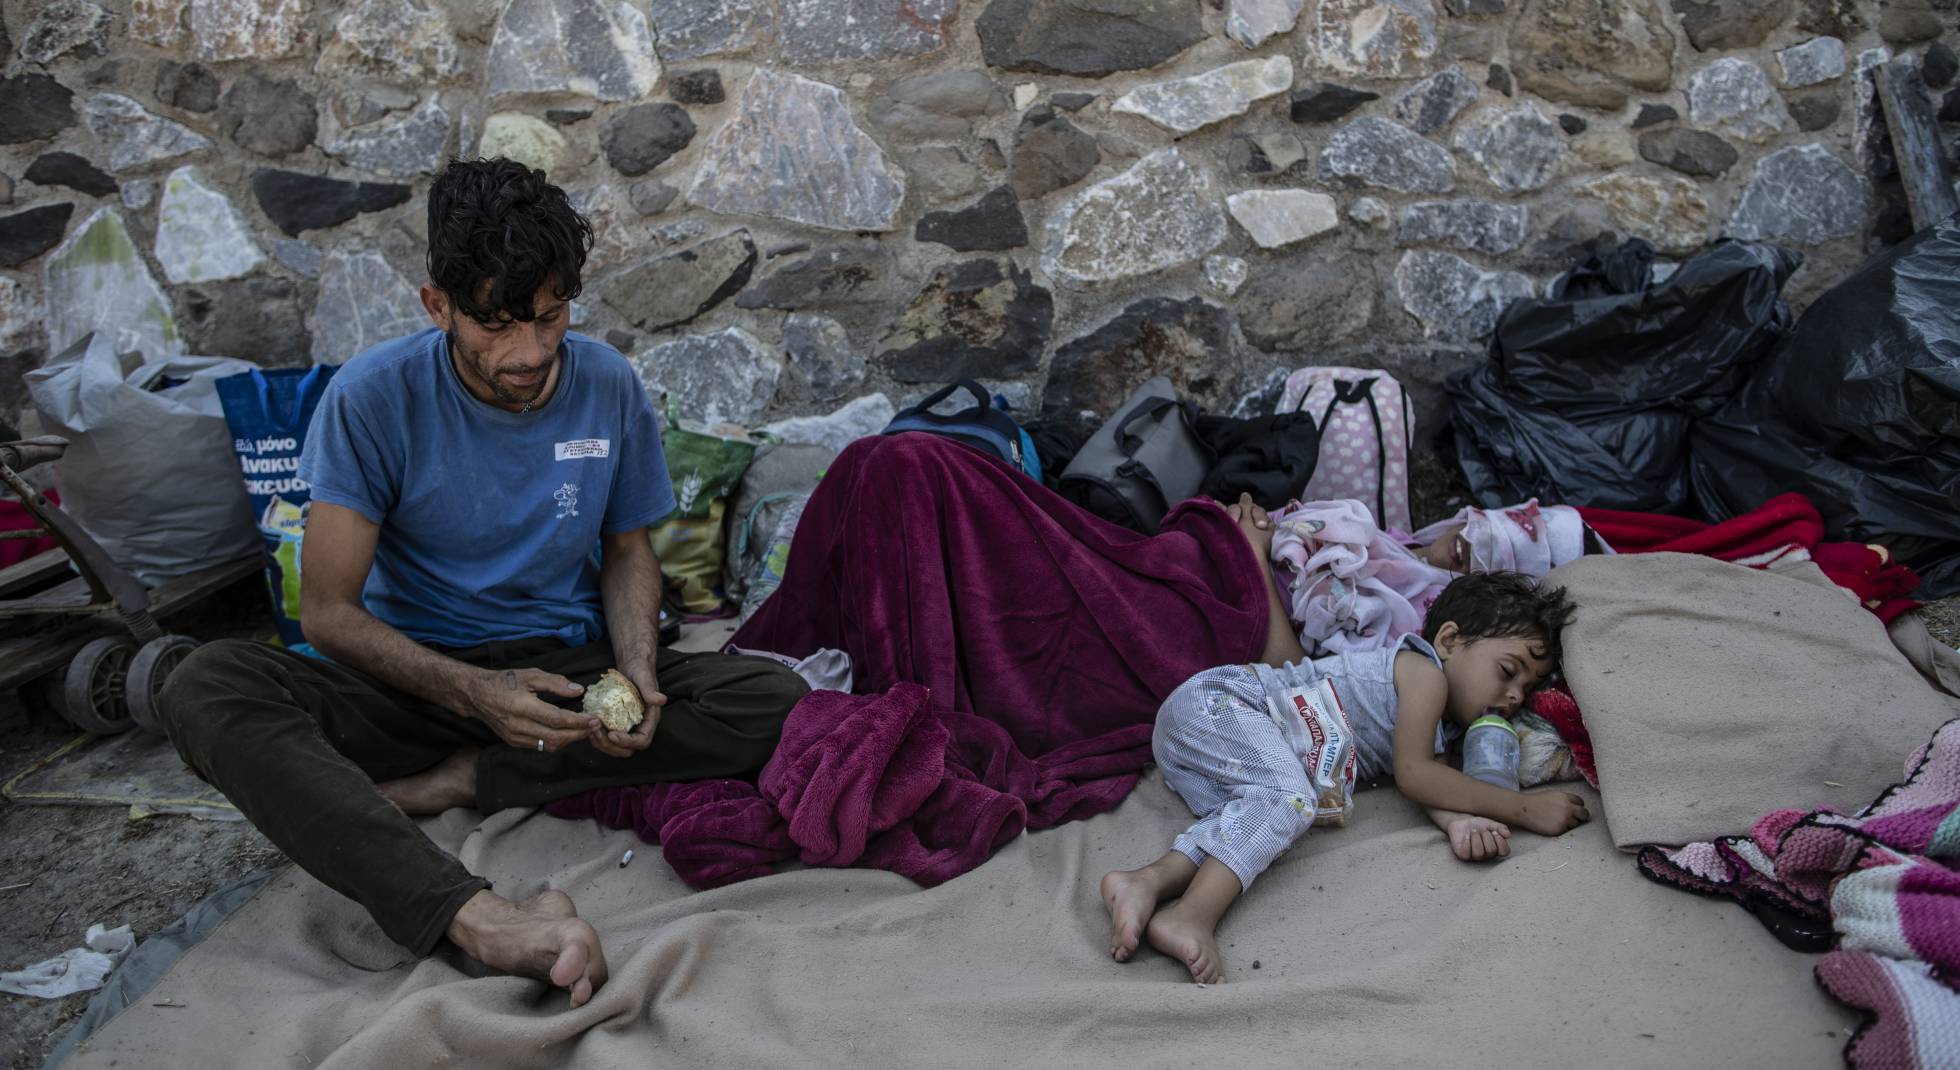 Cae la noche en Moria: dormir entre escombros y a ras del suelo | Internacional